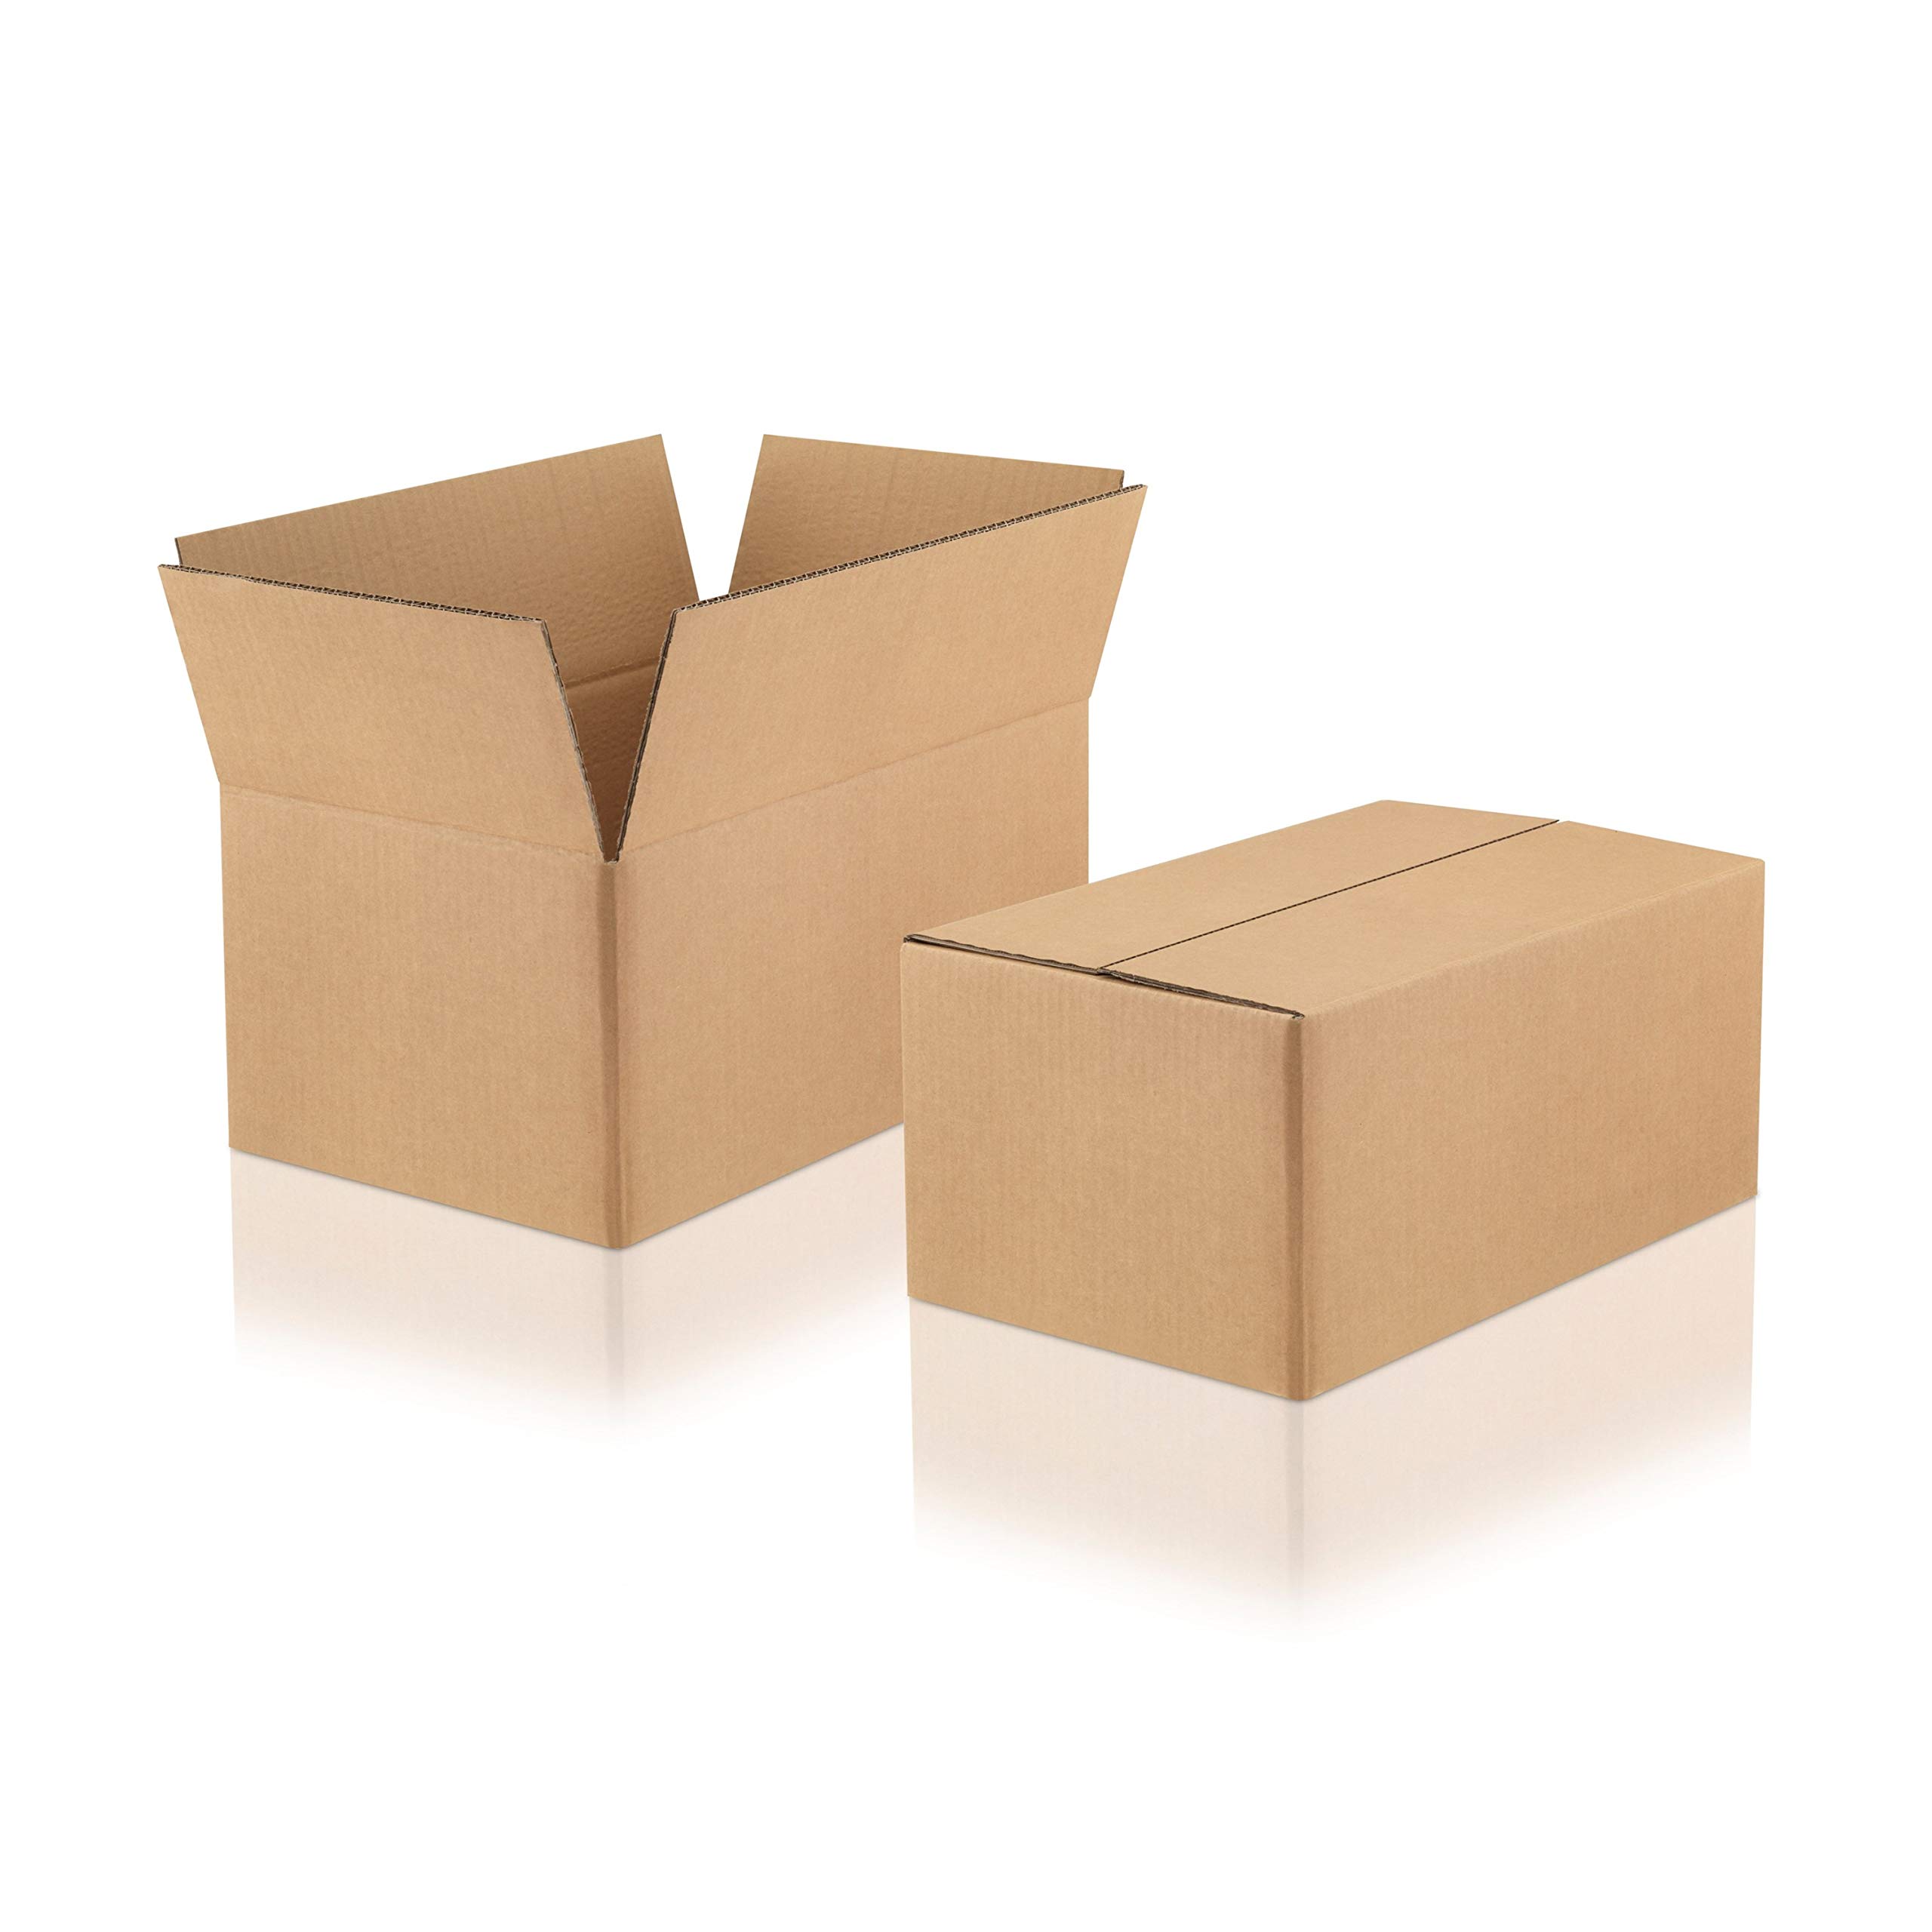 WPTrading - 40 Stück Versandkarton 2-wellig 300 x 250 x 200 mm Wellpappe (Nr. 2W-36B) Braun - Pappe Faltkarton für Warenversendung, Paket & Päckchen mittel (M) - Karton Versandverpackung extra stabil